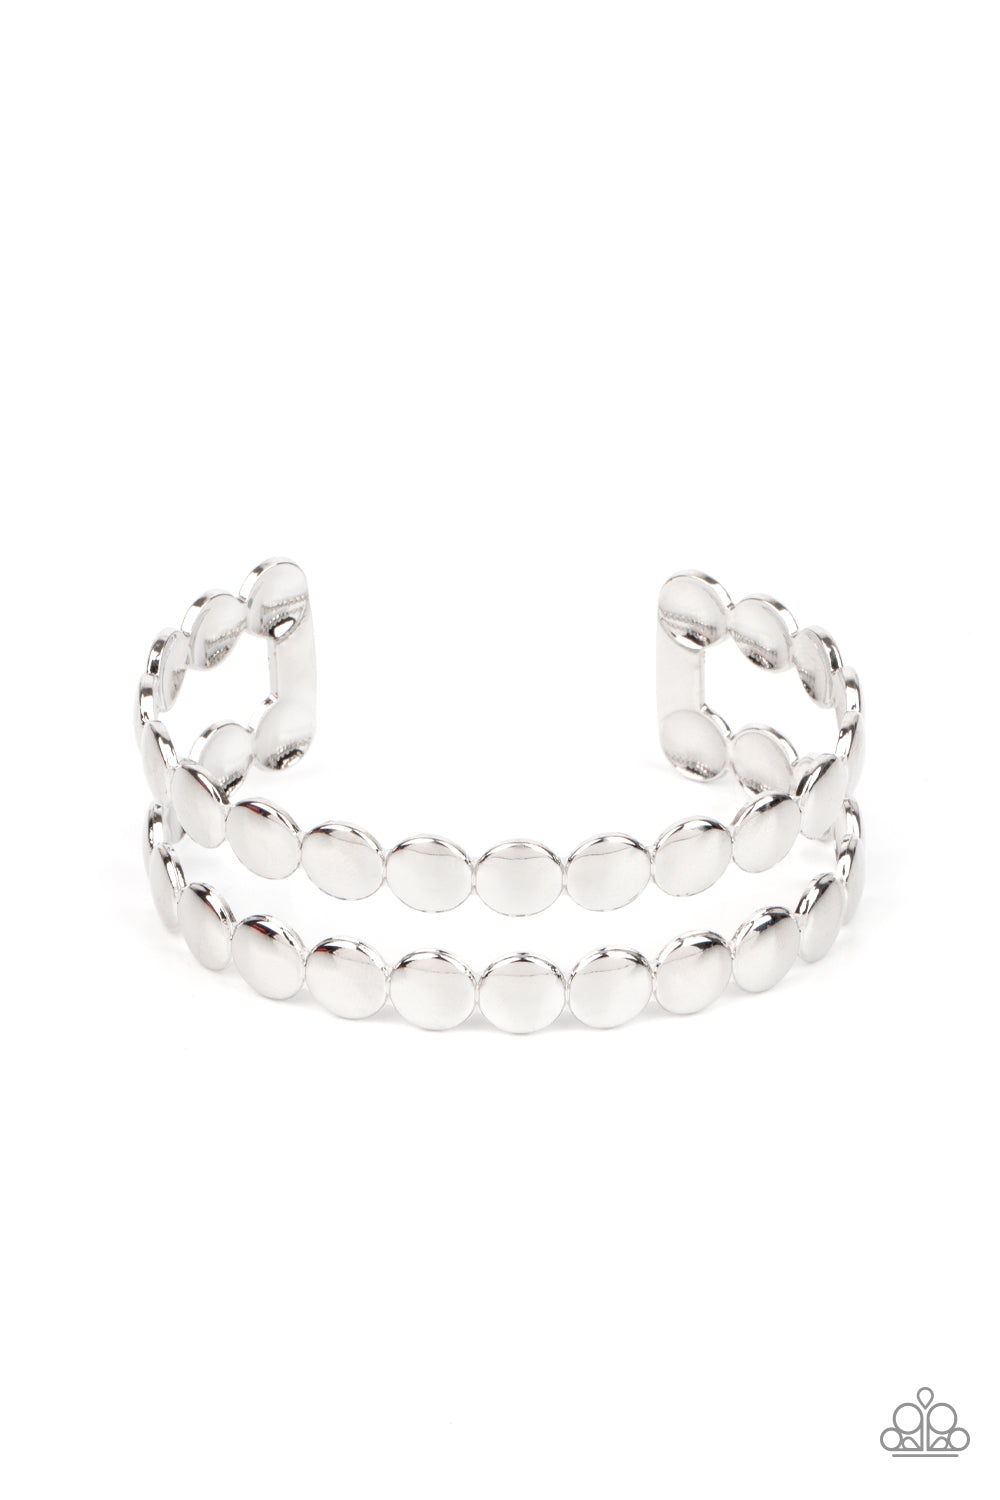 On The Spot Shimmer - Silver cuff bracelet